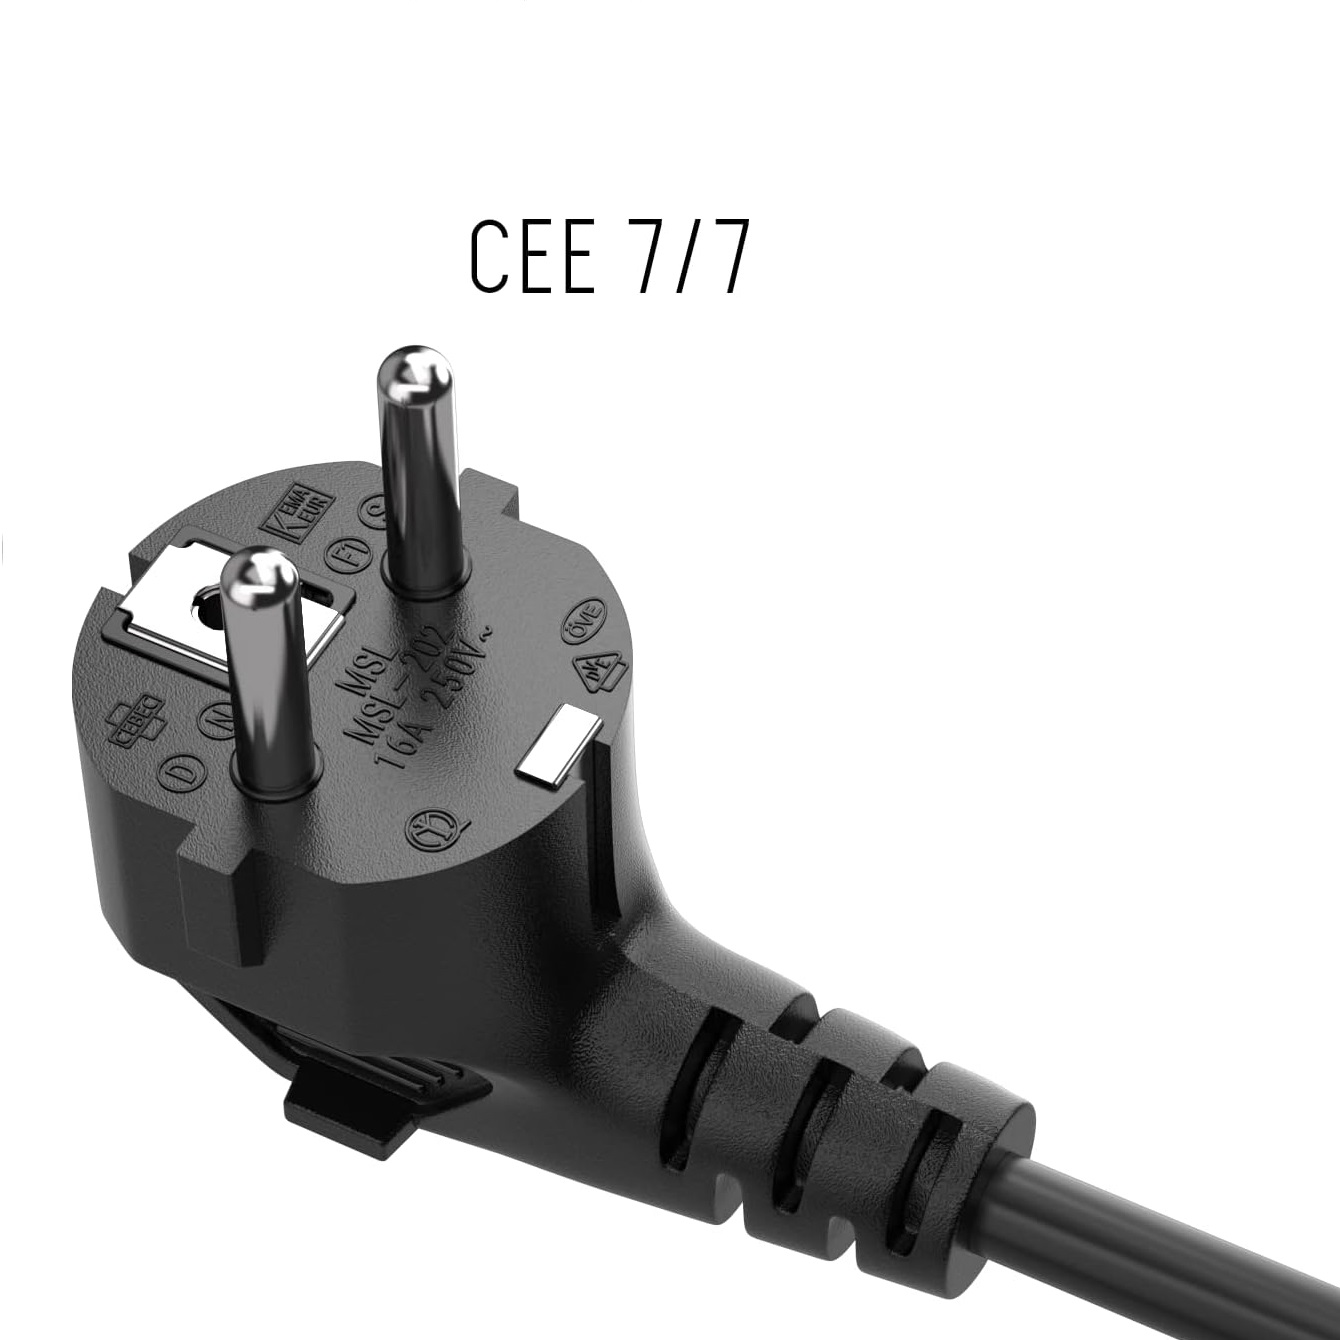 Cable alimentacion Trebol IEC-320-C5 3 M Negro